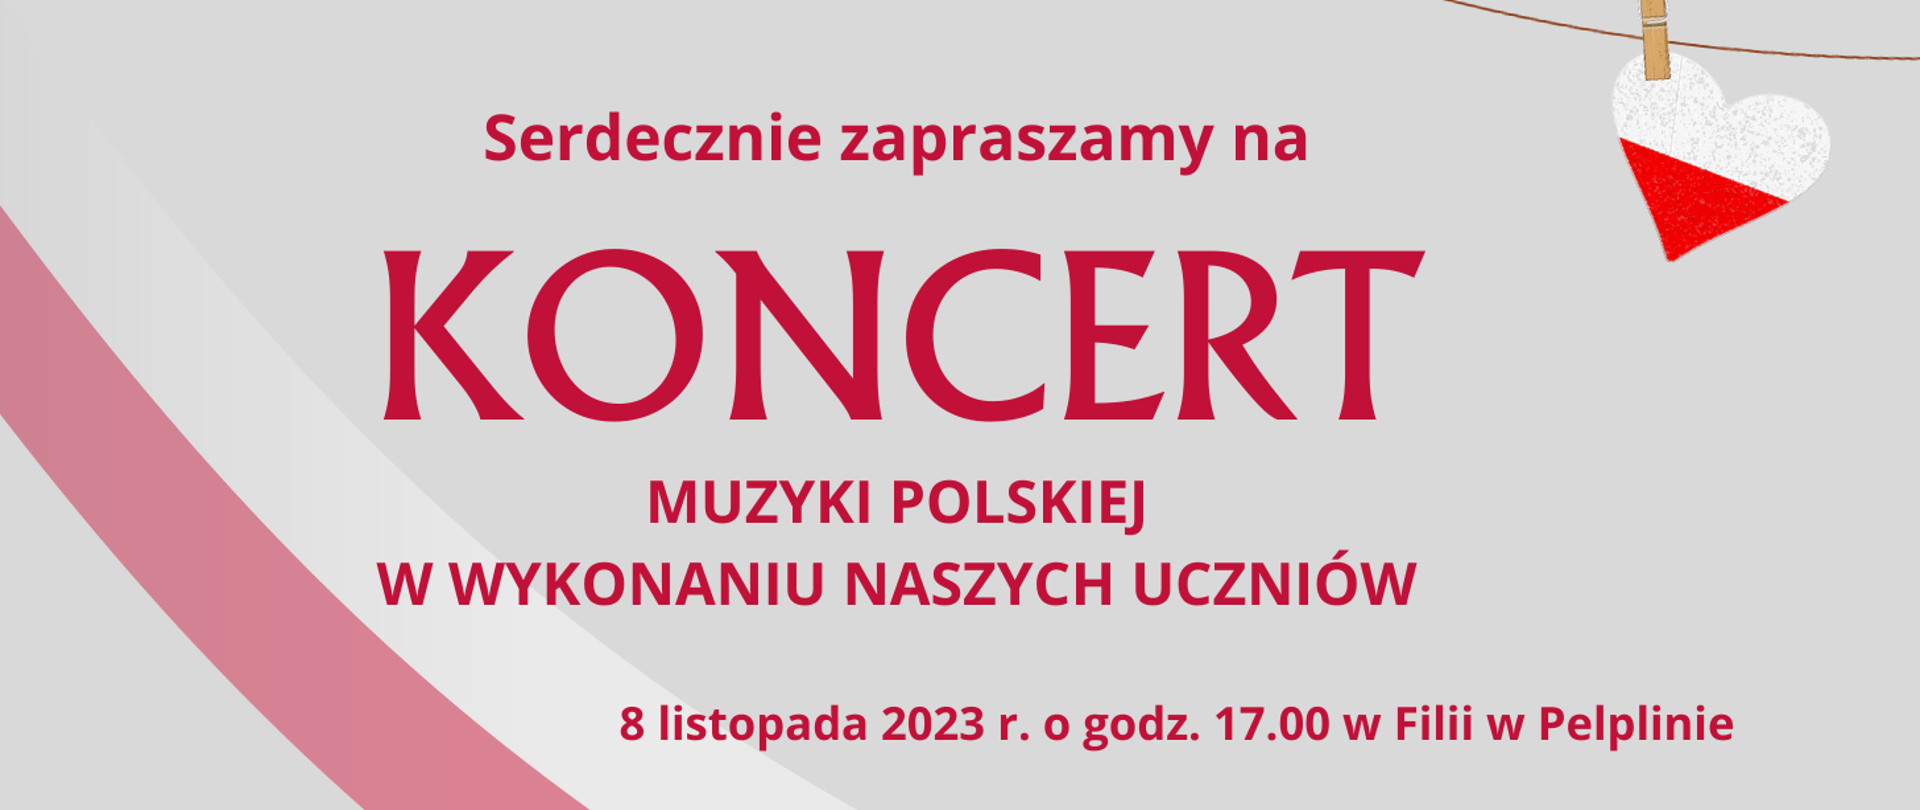 Serdecznie zapraszamy na koncert muzyki polskiej w wykonaniu naszych uczniów ósmy listopada 2023 roku o godzinie 17 00 w filii w pelplinie afisz z motywami polskiej flagi